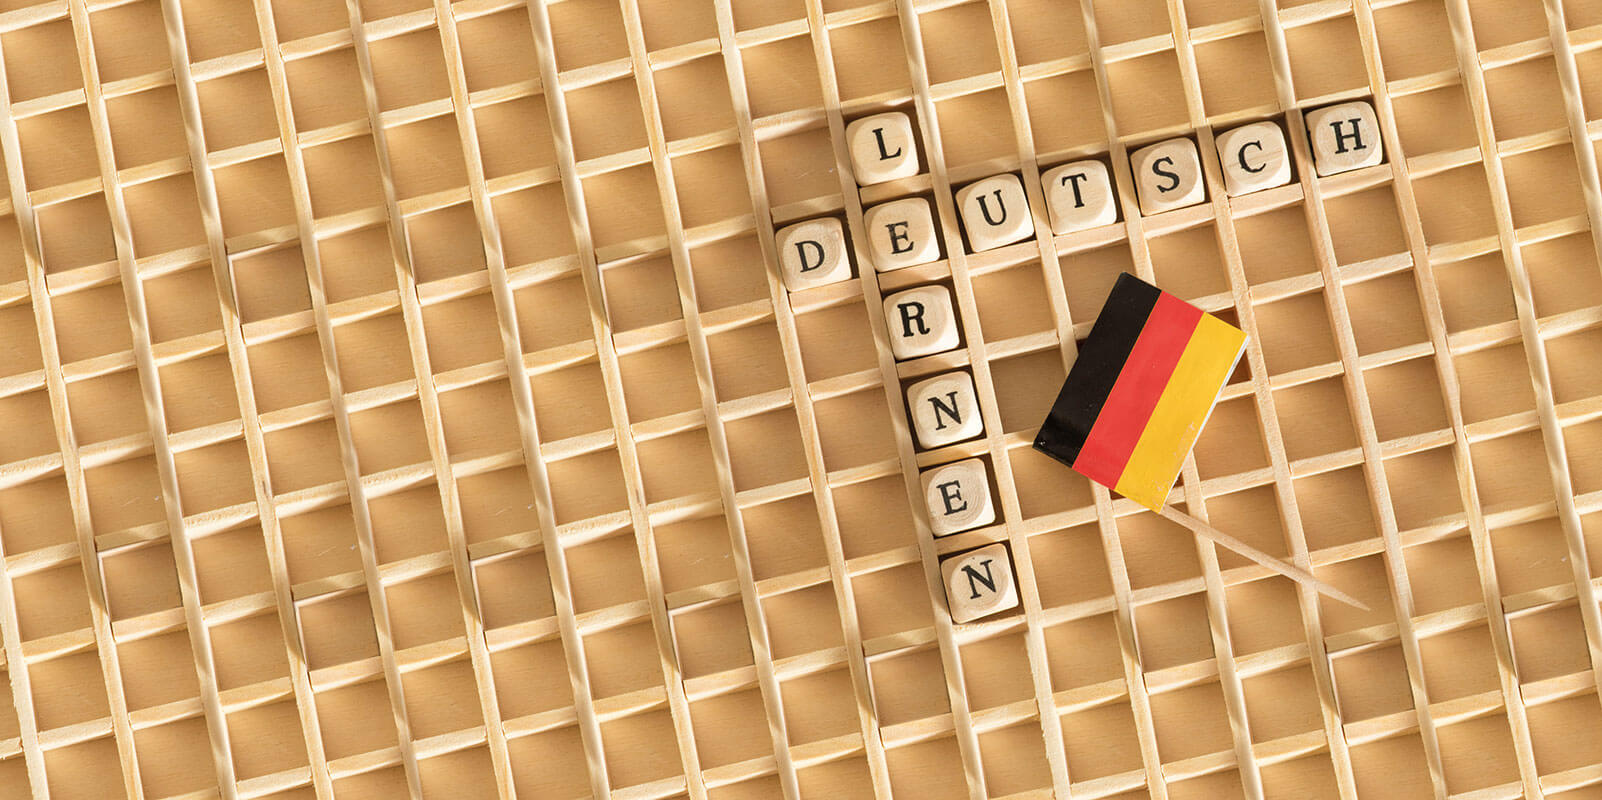 Buchstabenwürfel "Deutsch lernen"